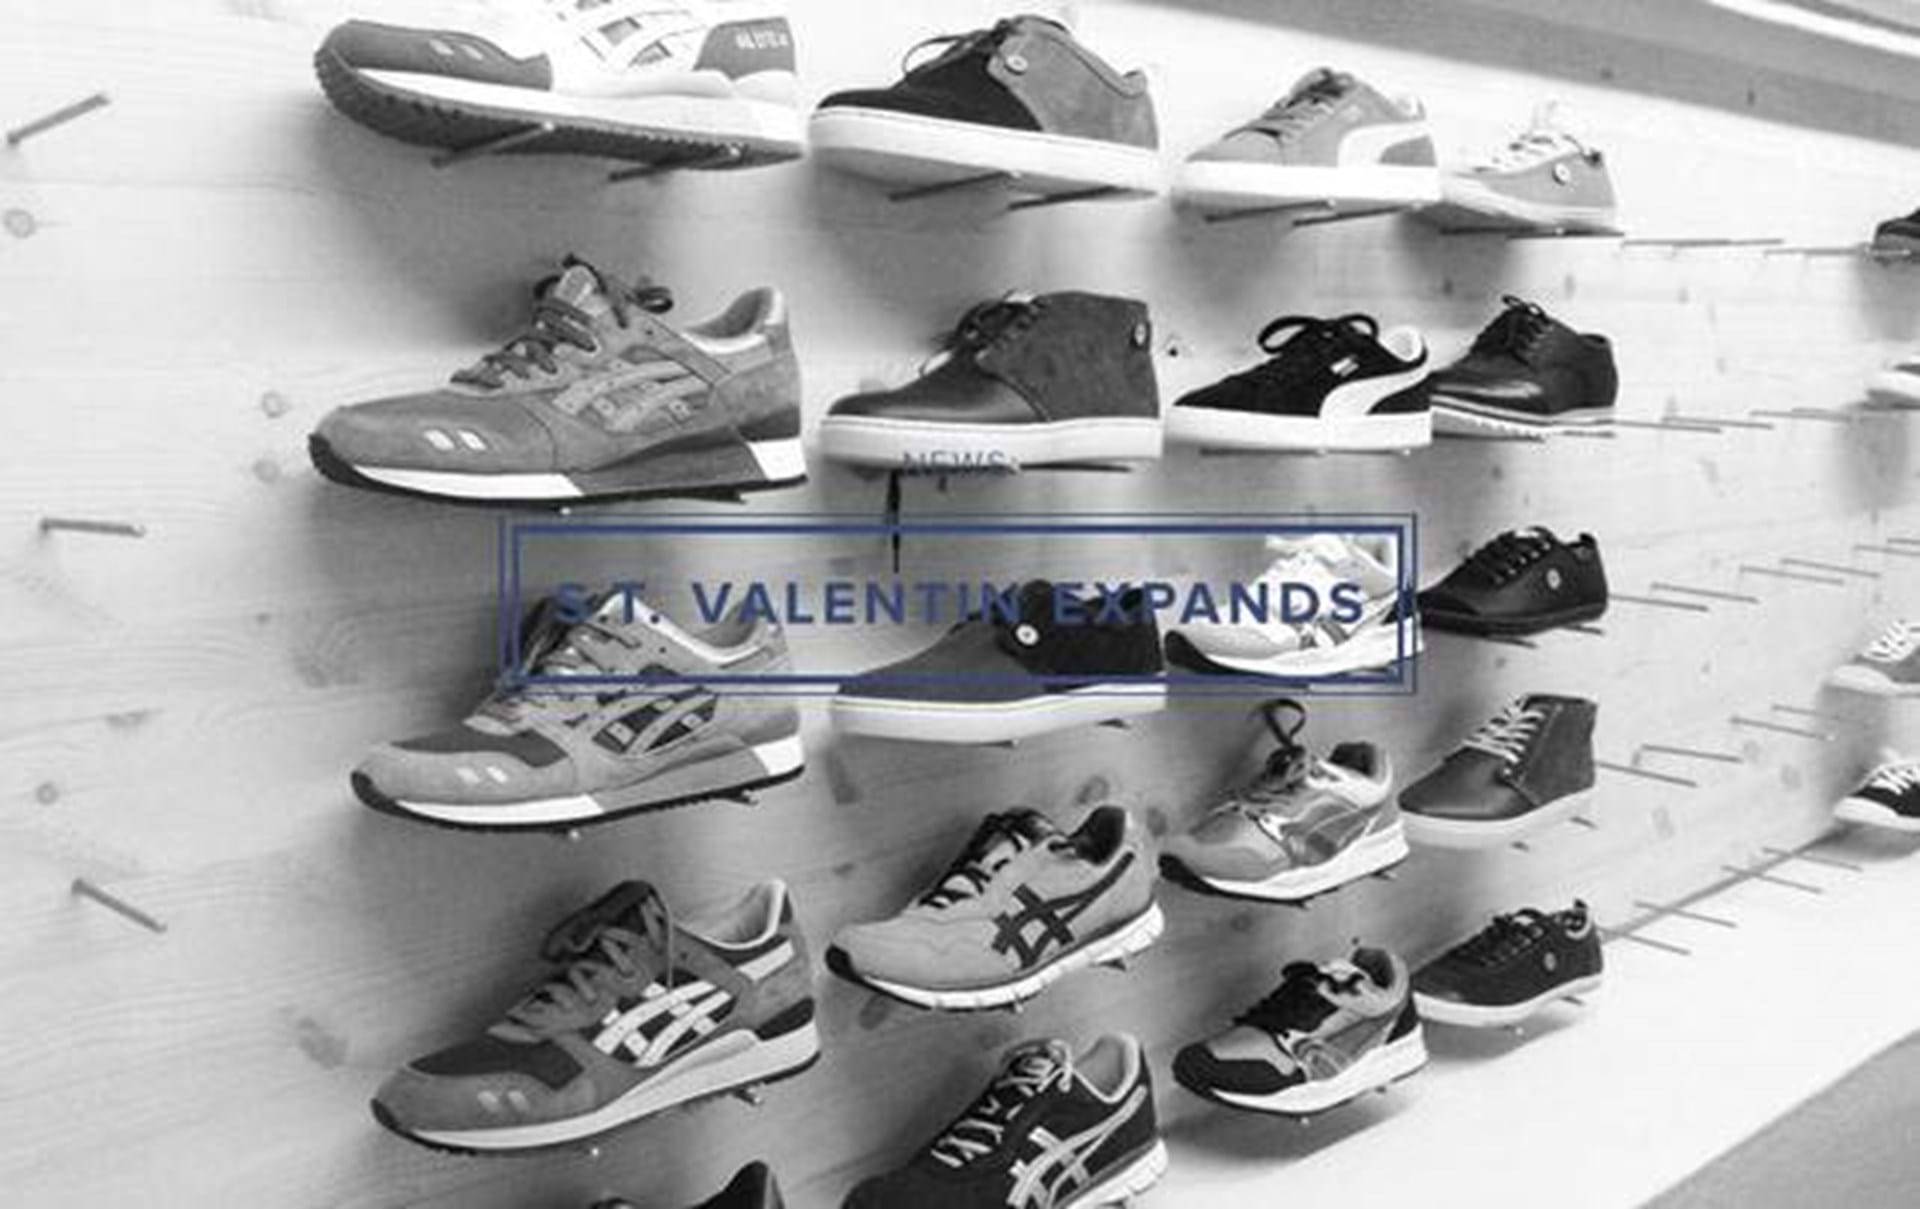 Valentin med sko accessories i kælderen - Euroman